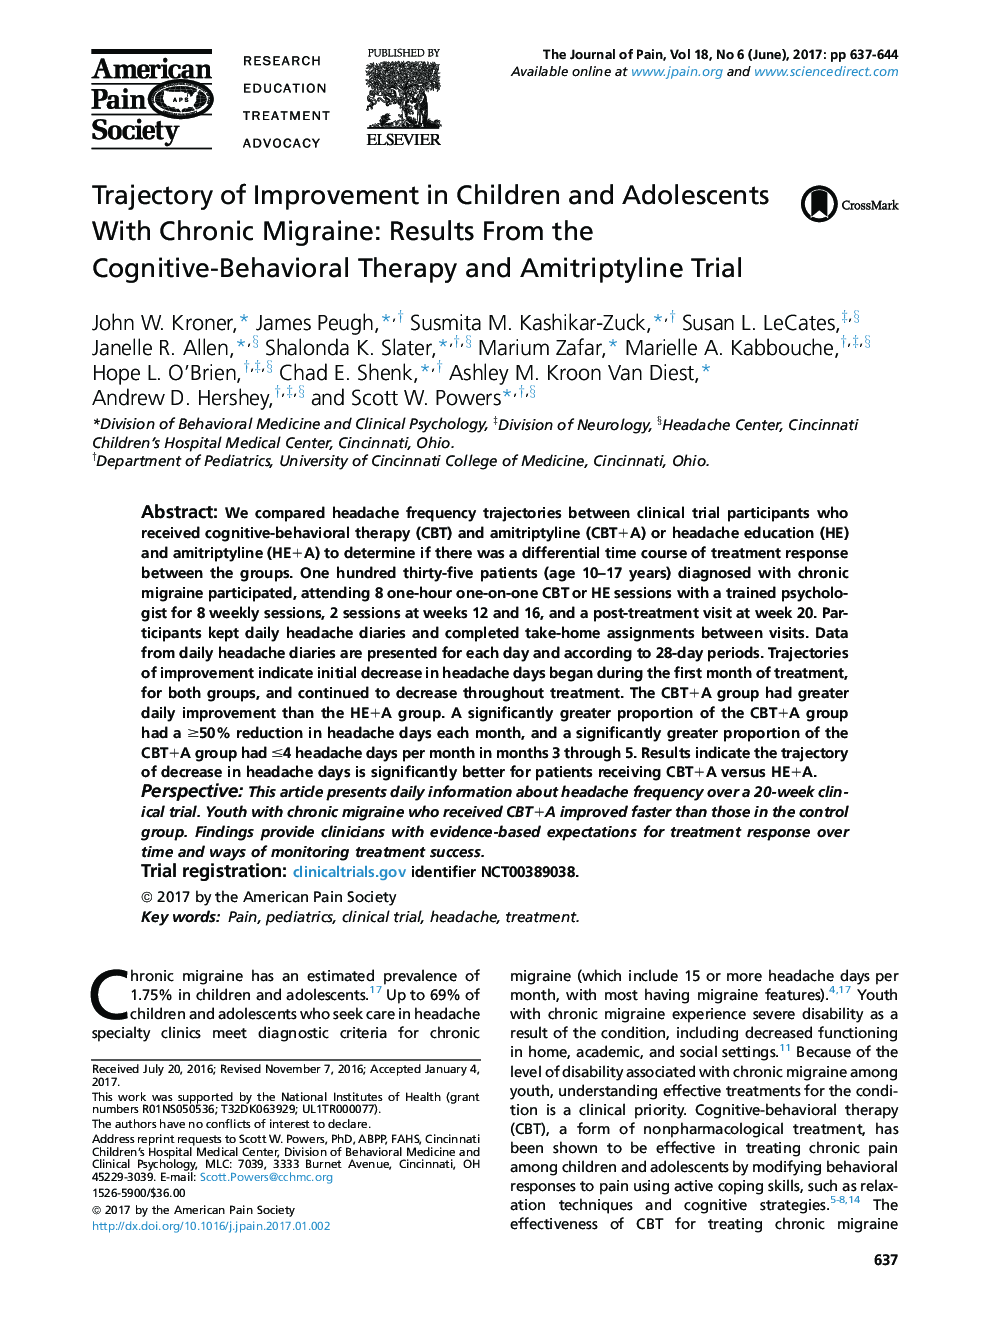 گزارش تصویری پیشرفته در کودکان و نوجوانان مبتلا به میگرن مزمن: نتایج حاصل از درمان رفتاری شناختی-رفتاری و آزمایش آمتریتریلین 